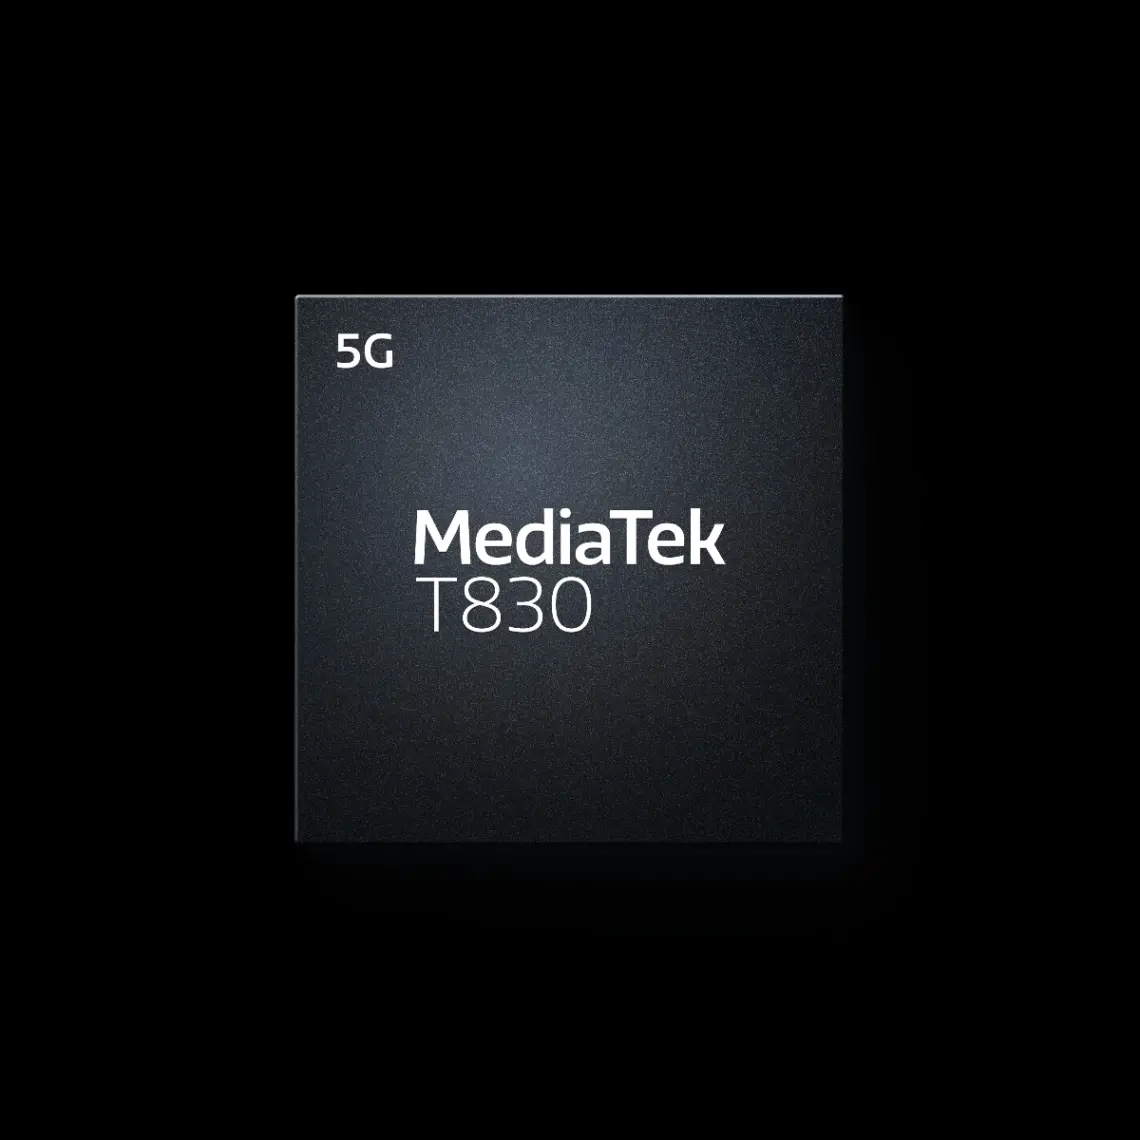 MediaTek T830, su nuevo chip para routers inalámbricos 5G